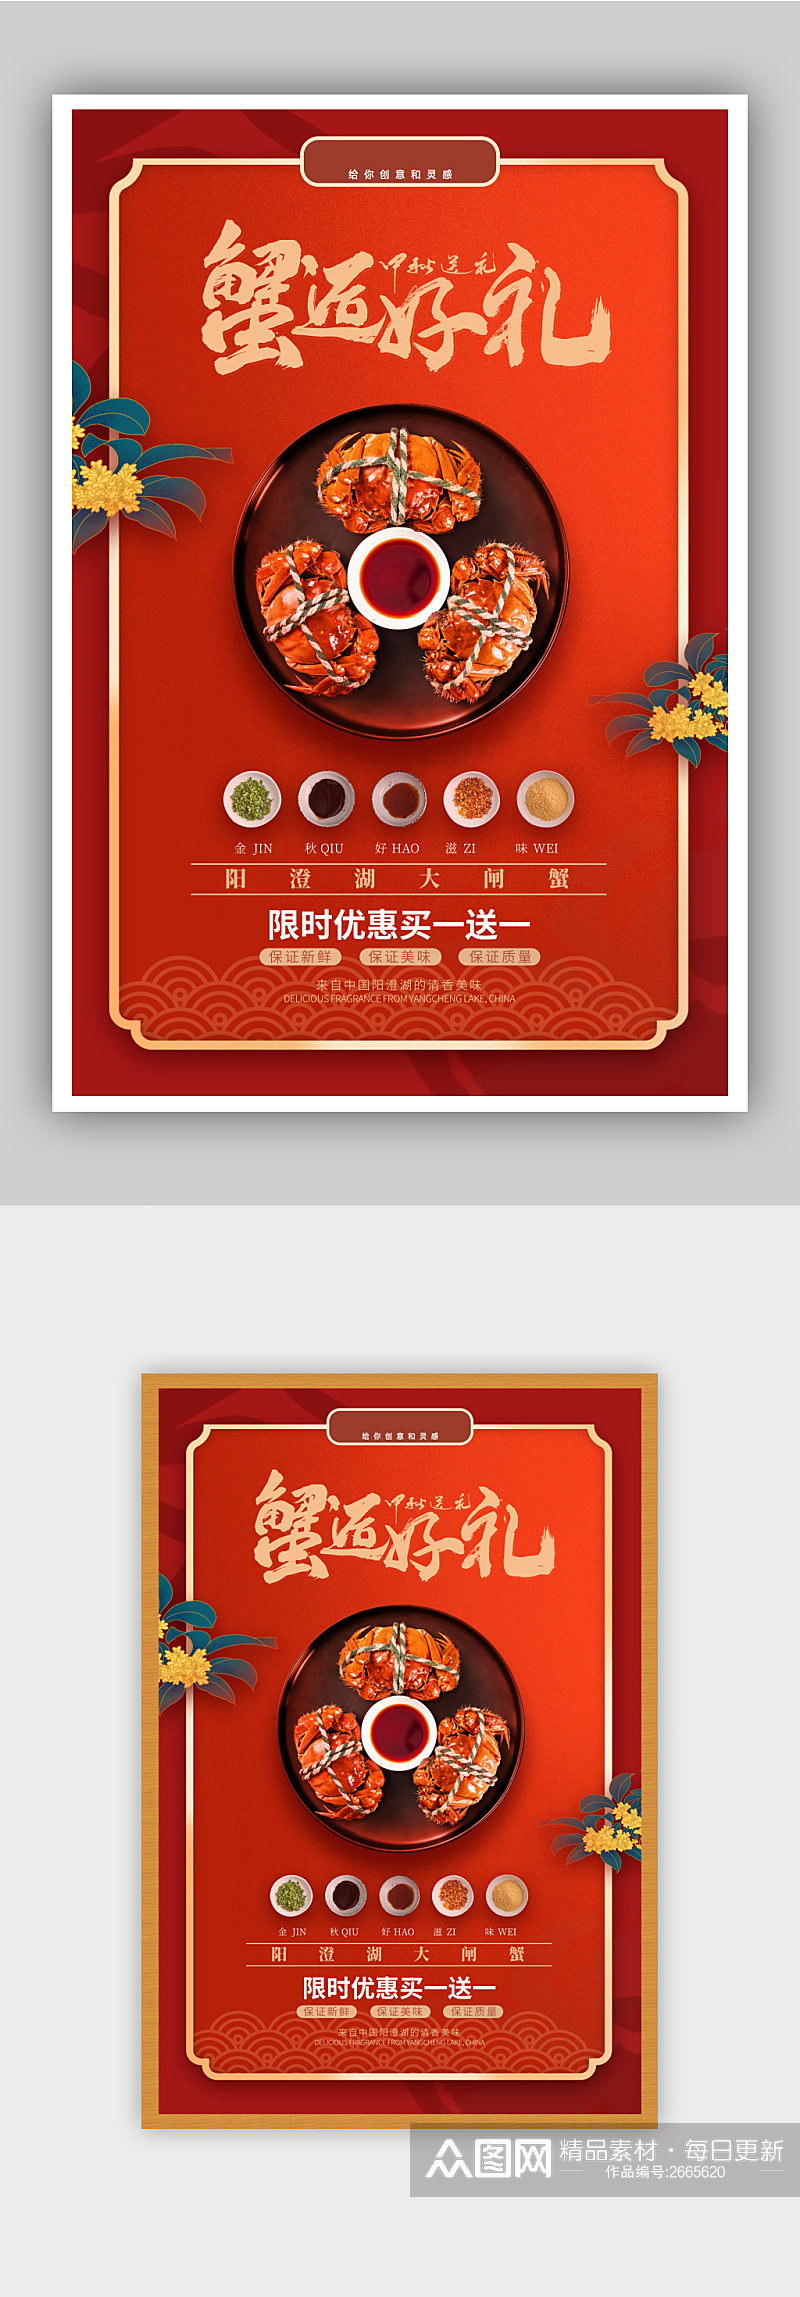 中国风红色喜庆大闸蟹促销海报素材